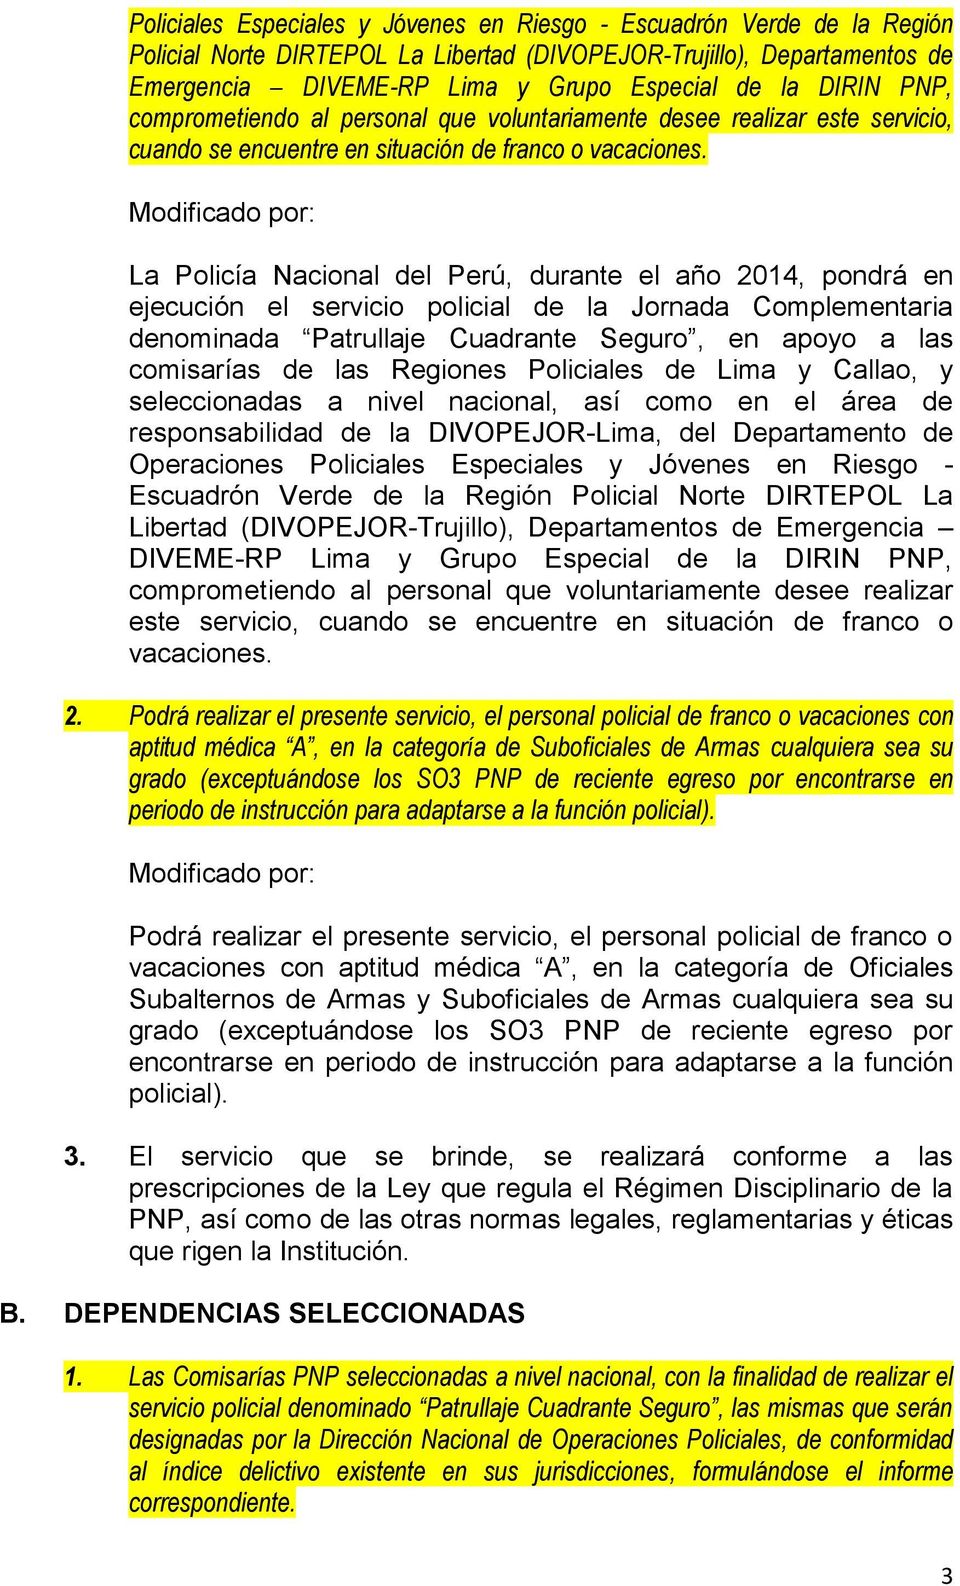 La Policía Nacional del Perú, durante el año 2014, pondrá en ejecución el servicio policial de la Jornada Complementaria denominada Patrullaje Cuadrante Seguro, en apoyo a las comisarías de las